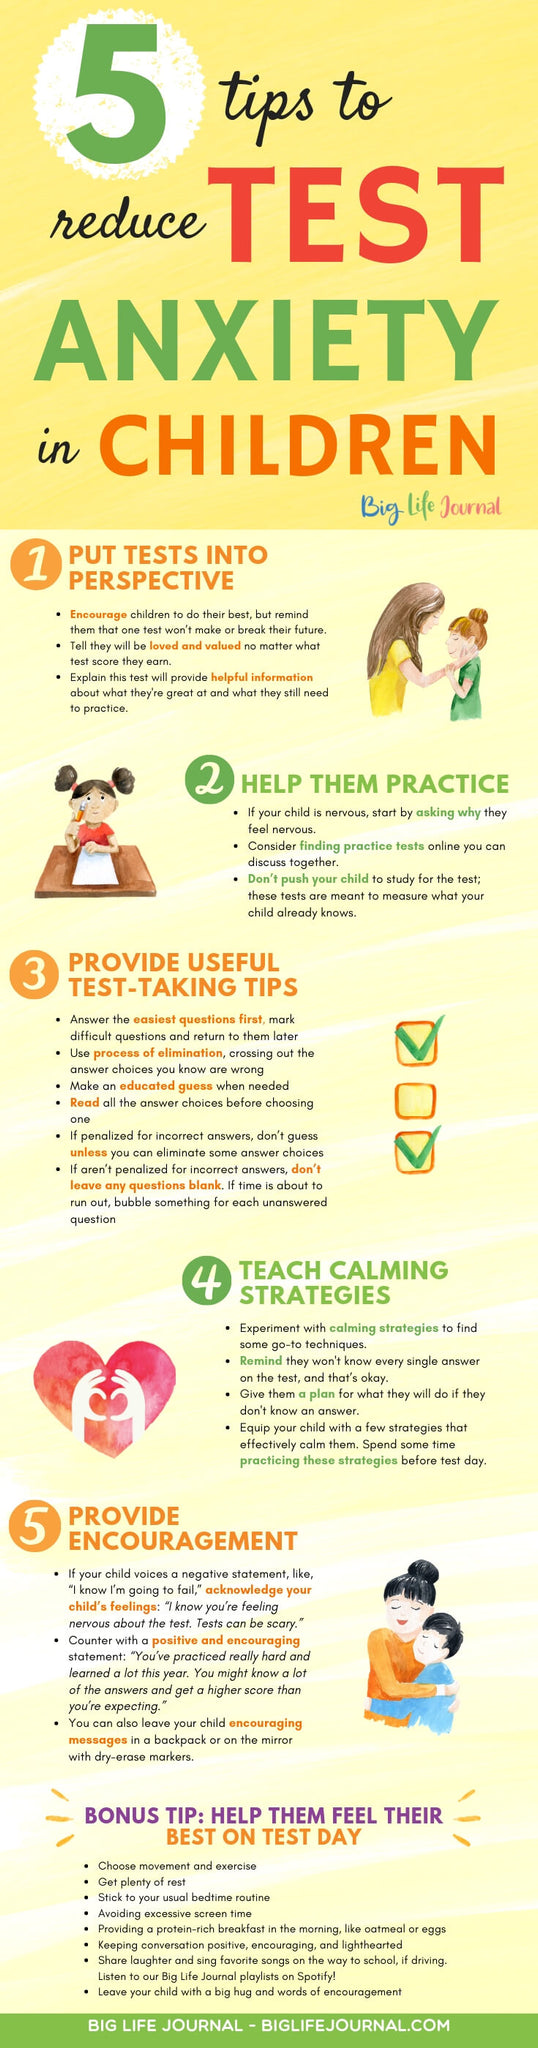 5 Tipy ke snížení testovací úzkosti u dětí